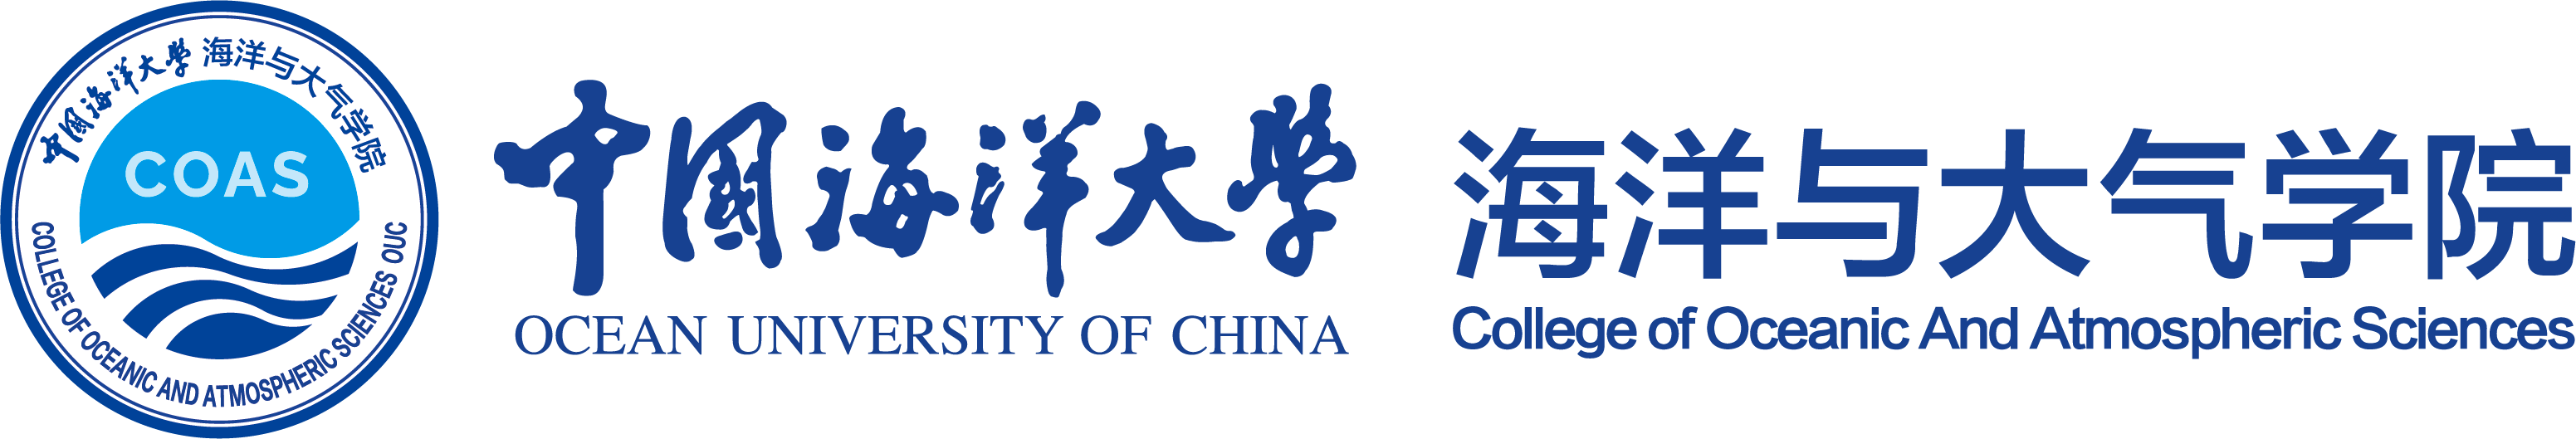 中国海洋大学-海洋与大气学院